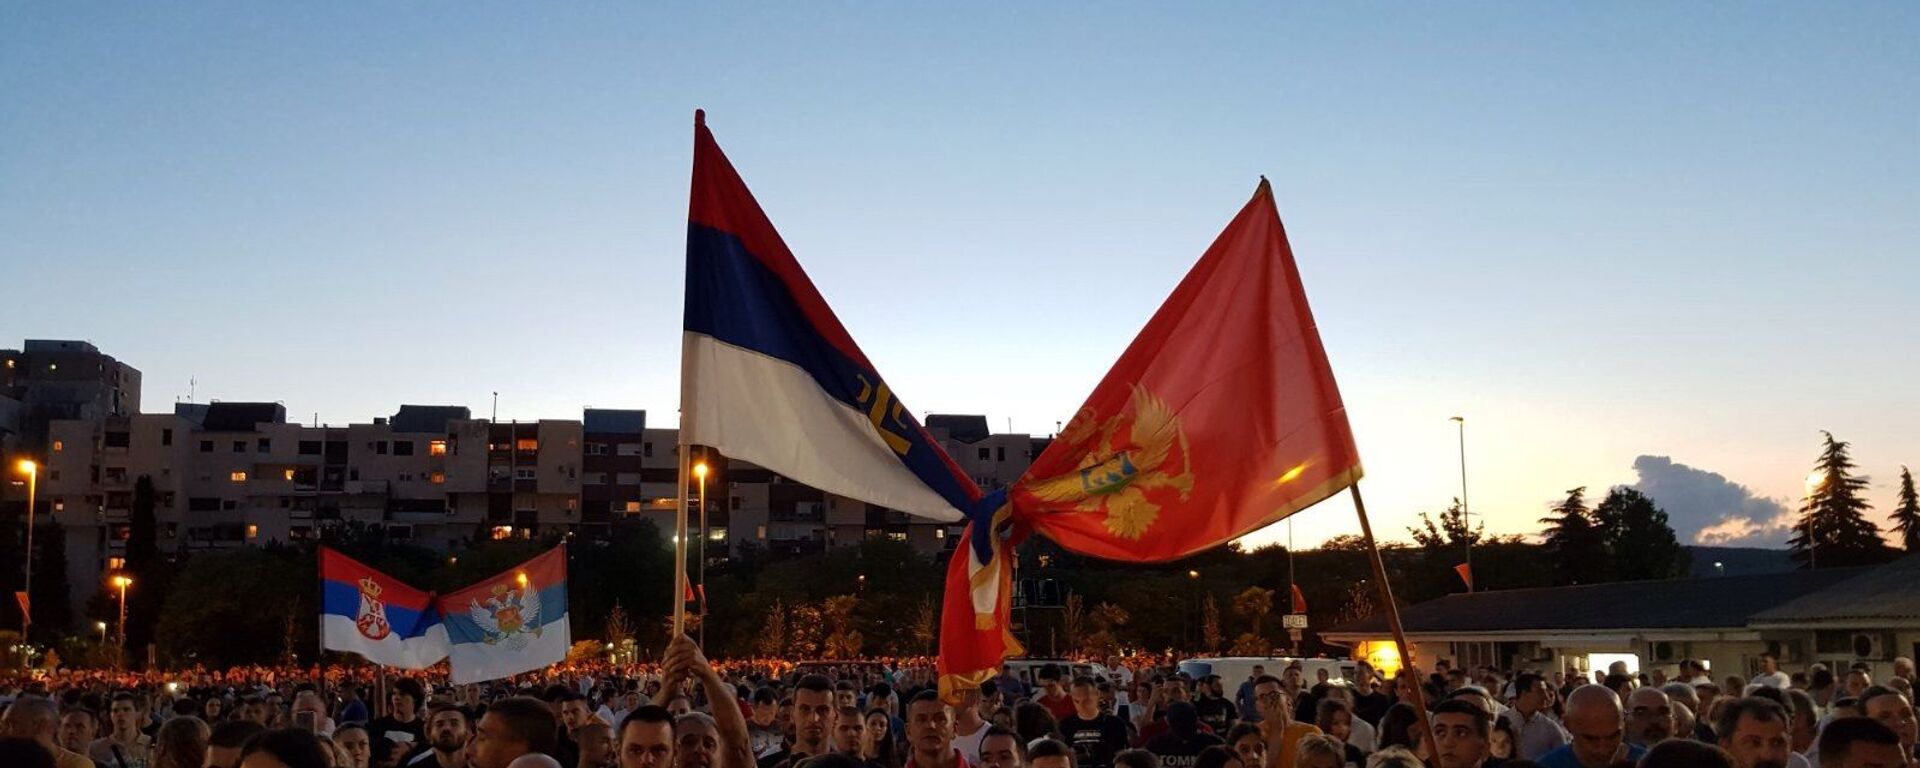 Srpska i crnogorska zastava uvezane na molebanu u Podgorici - Sputnik Srbija, 1920, 12.08.2021